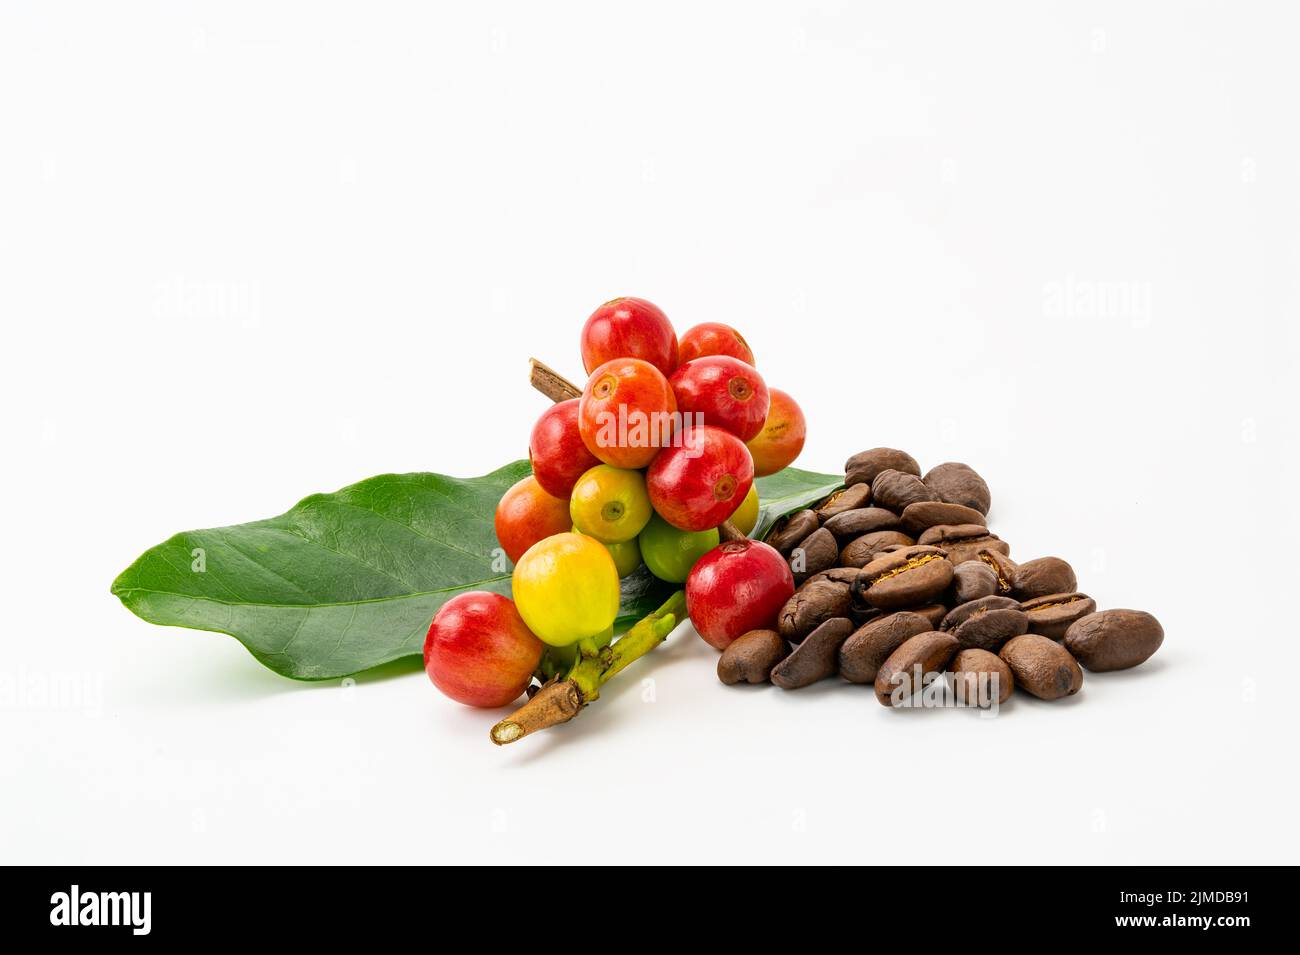 Ein paar arabica-Kaffeefrüchte mit grünem Blatt und einem Haufen gerösteter Kaffeebohnen auf weißem Hintergrund. Stockfoto